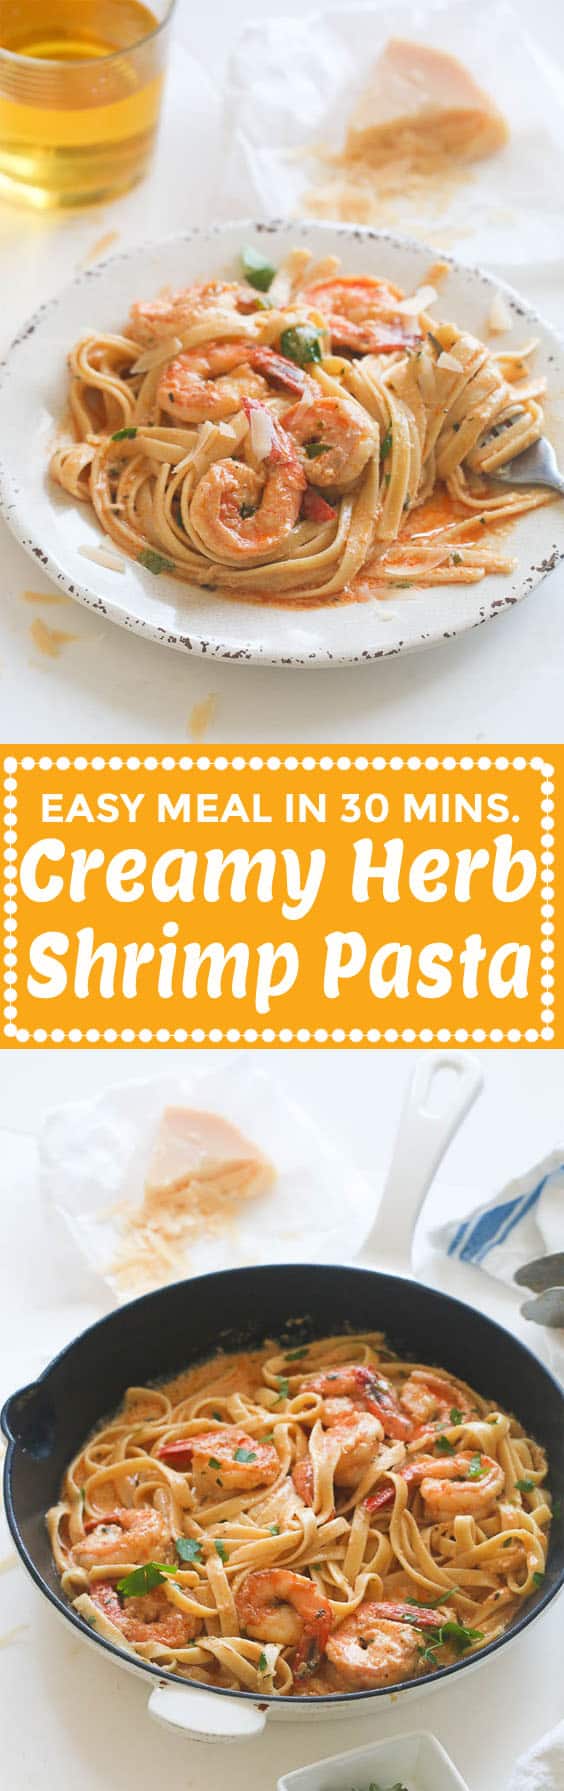 Creamy Herb Shrimp Pasta Recipe